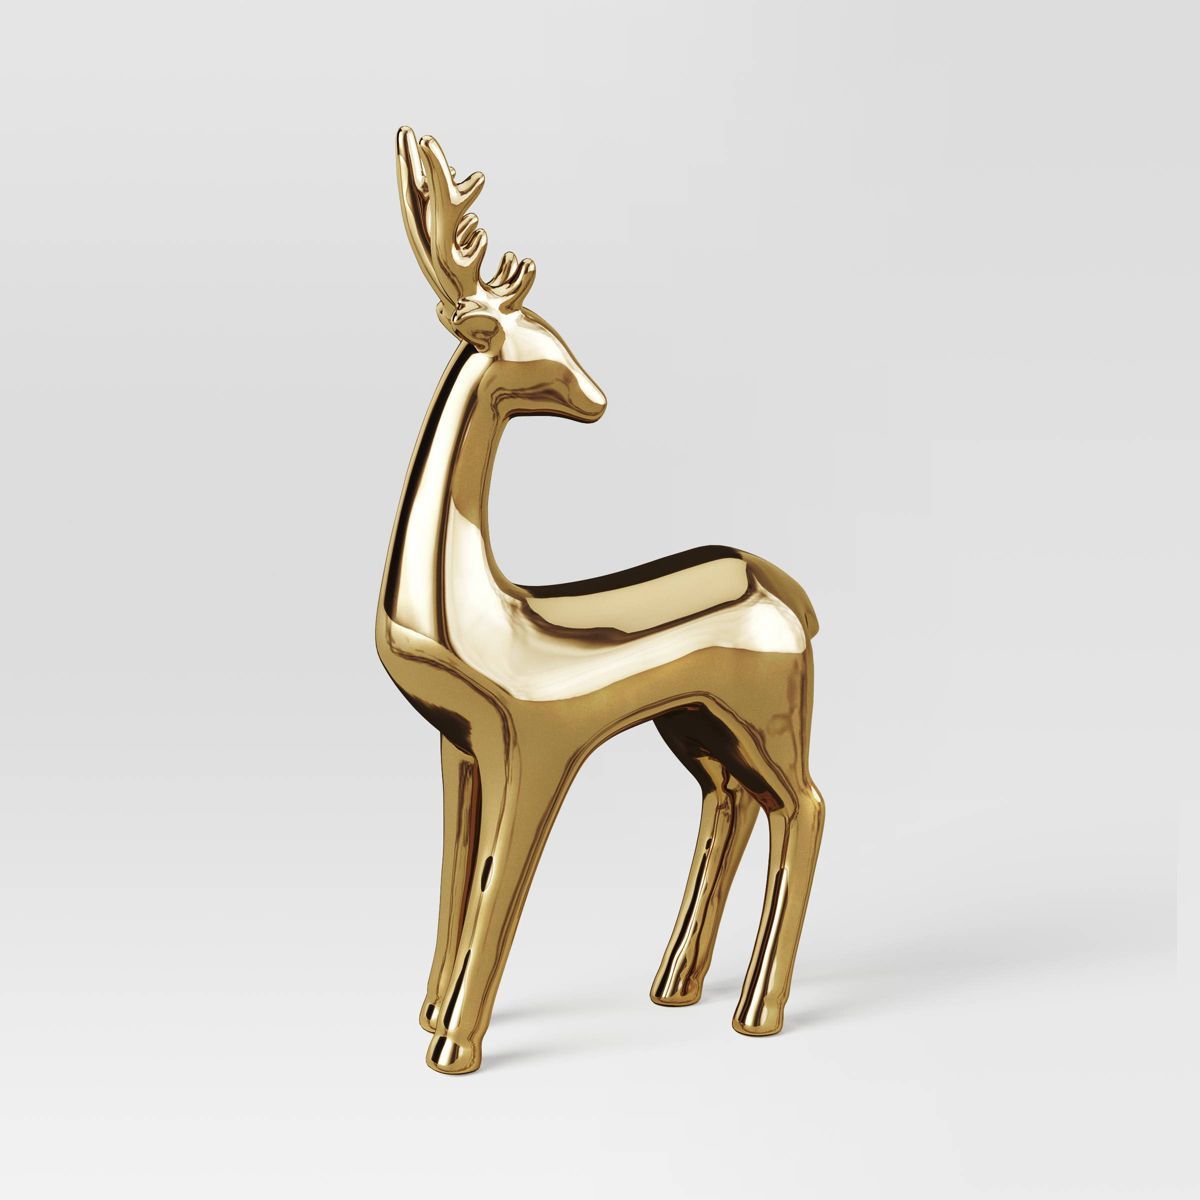 14.75" Plated Ceramic Standing Reindeer Animal Christmas Sculpture - Wondershop™ Gold | Target